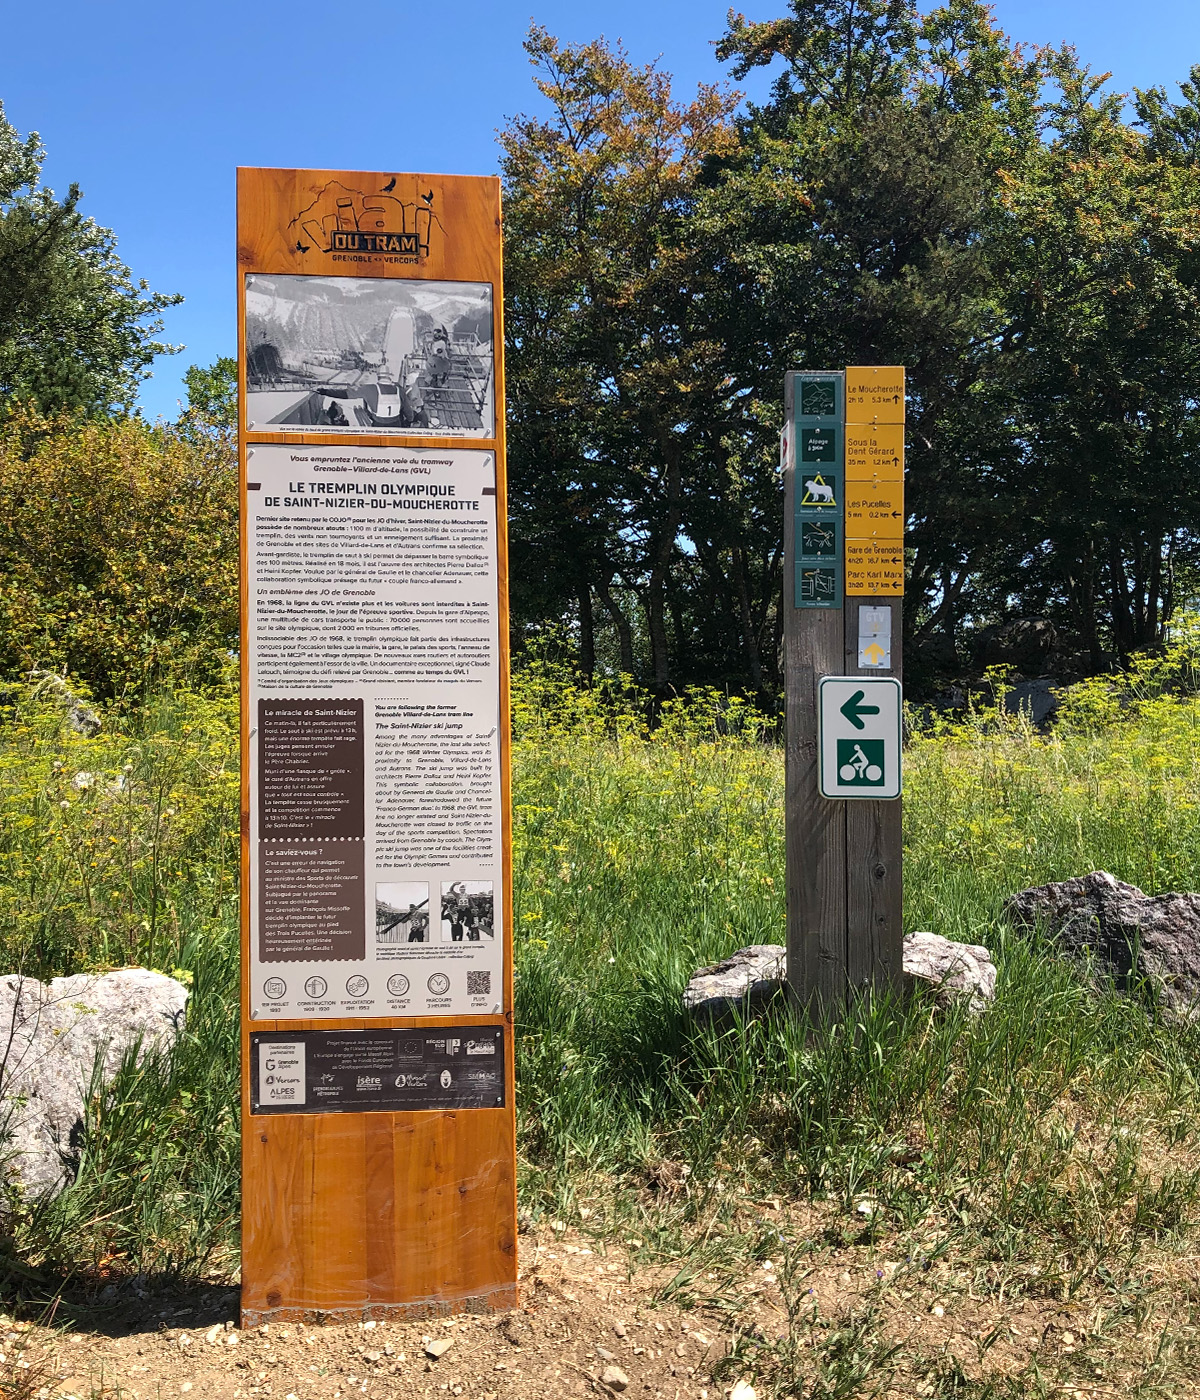 Panneaux d'exposition sur le patrimoine de la Via du Tram créés pour Grenoble-Alpes Métropole par Caramel & Paprika - Panneau 6 consacré au tremplin olympique de Saint-Nizier-du-Moucherotte installé sur site.